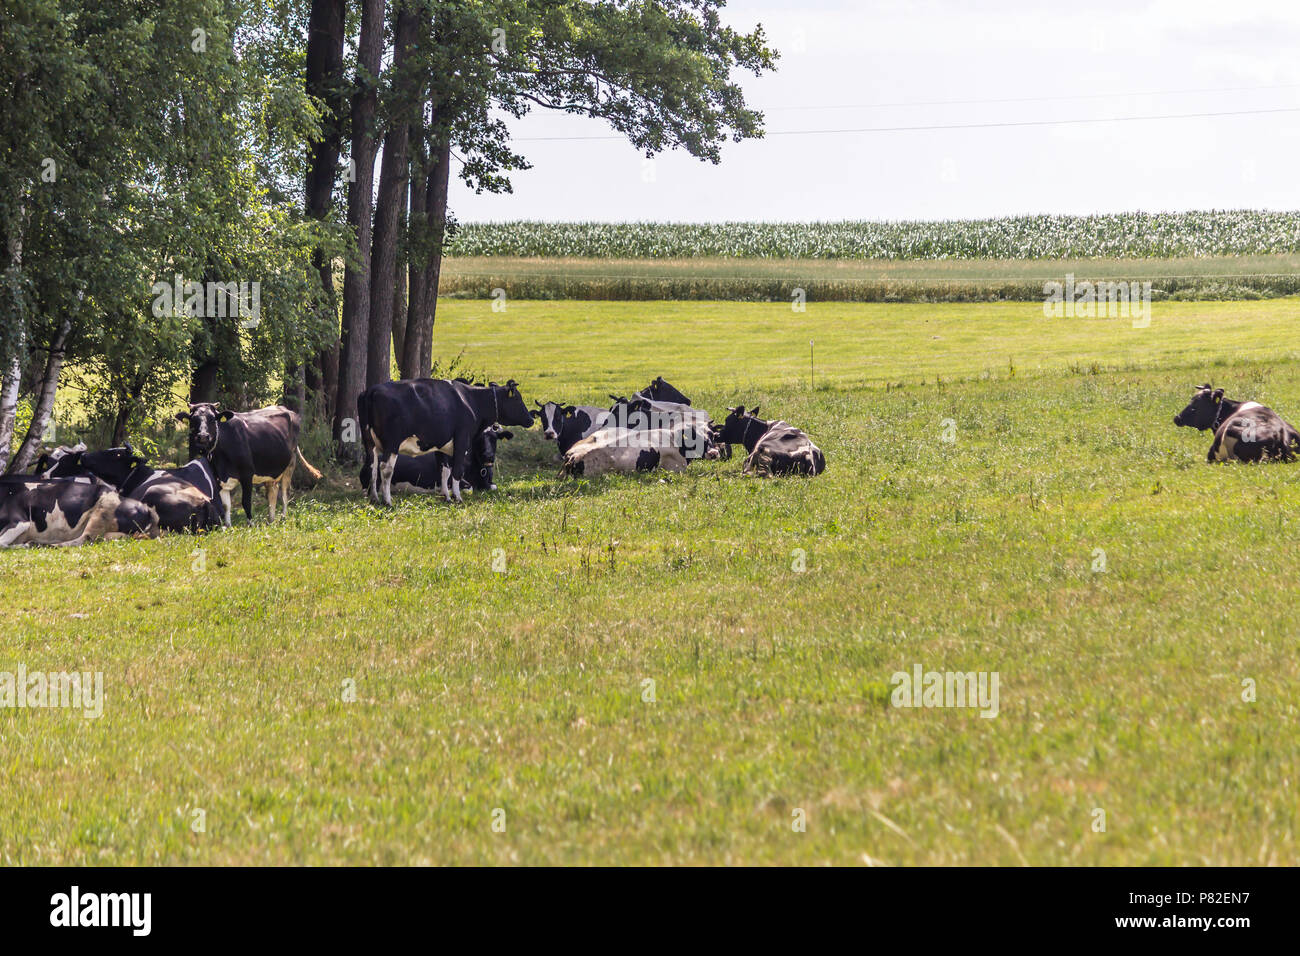 Journée chaude . Les vaches Motley réside dans l'ombre des arbres. Au milieu de l'été. Ferme laitière. Podlasie, Pologne. Banque D'Images